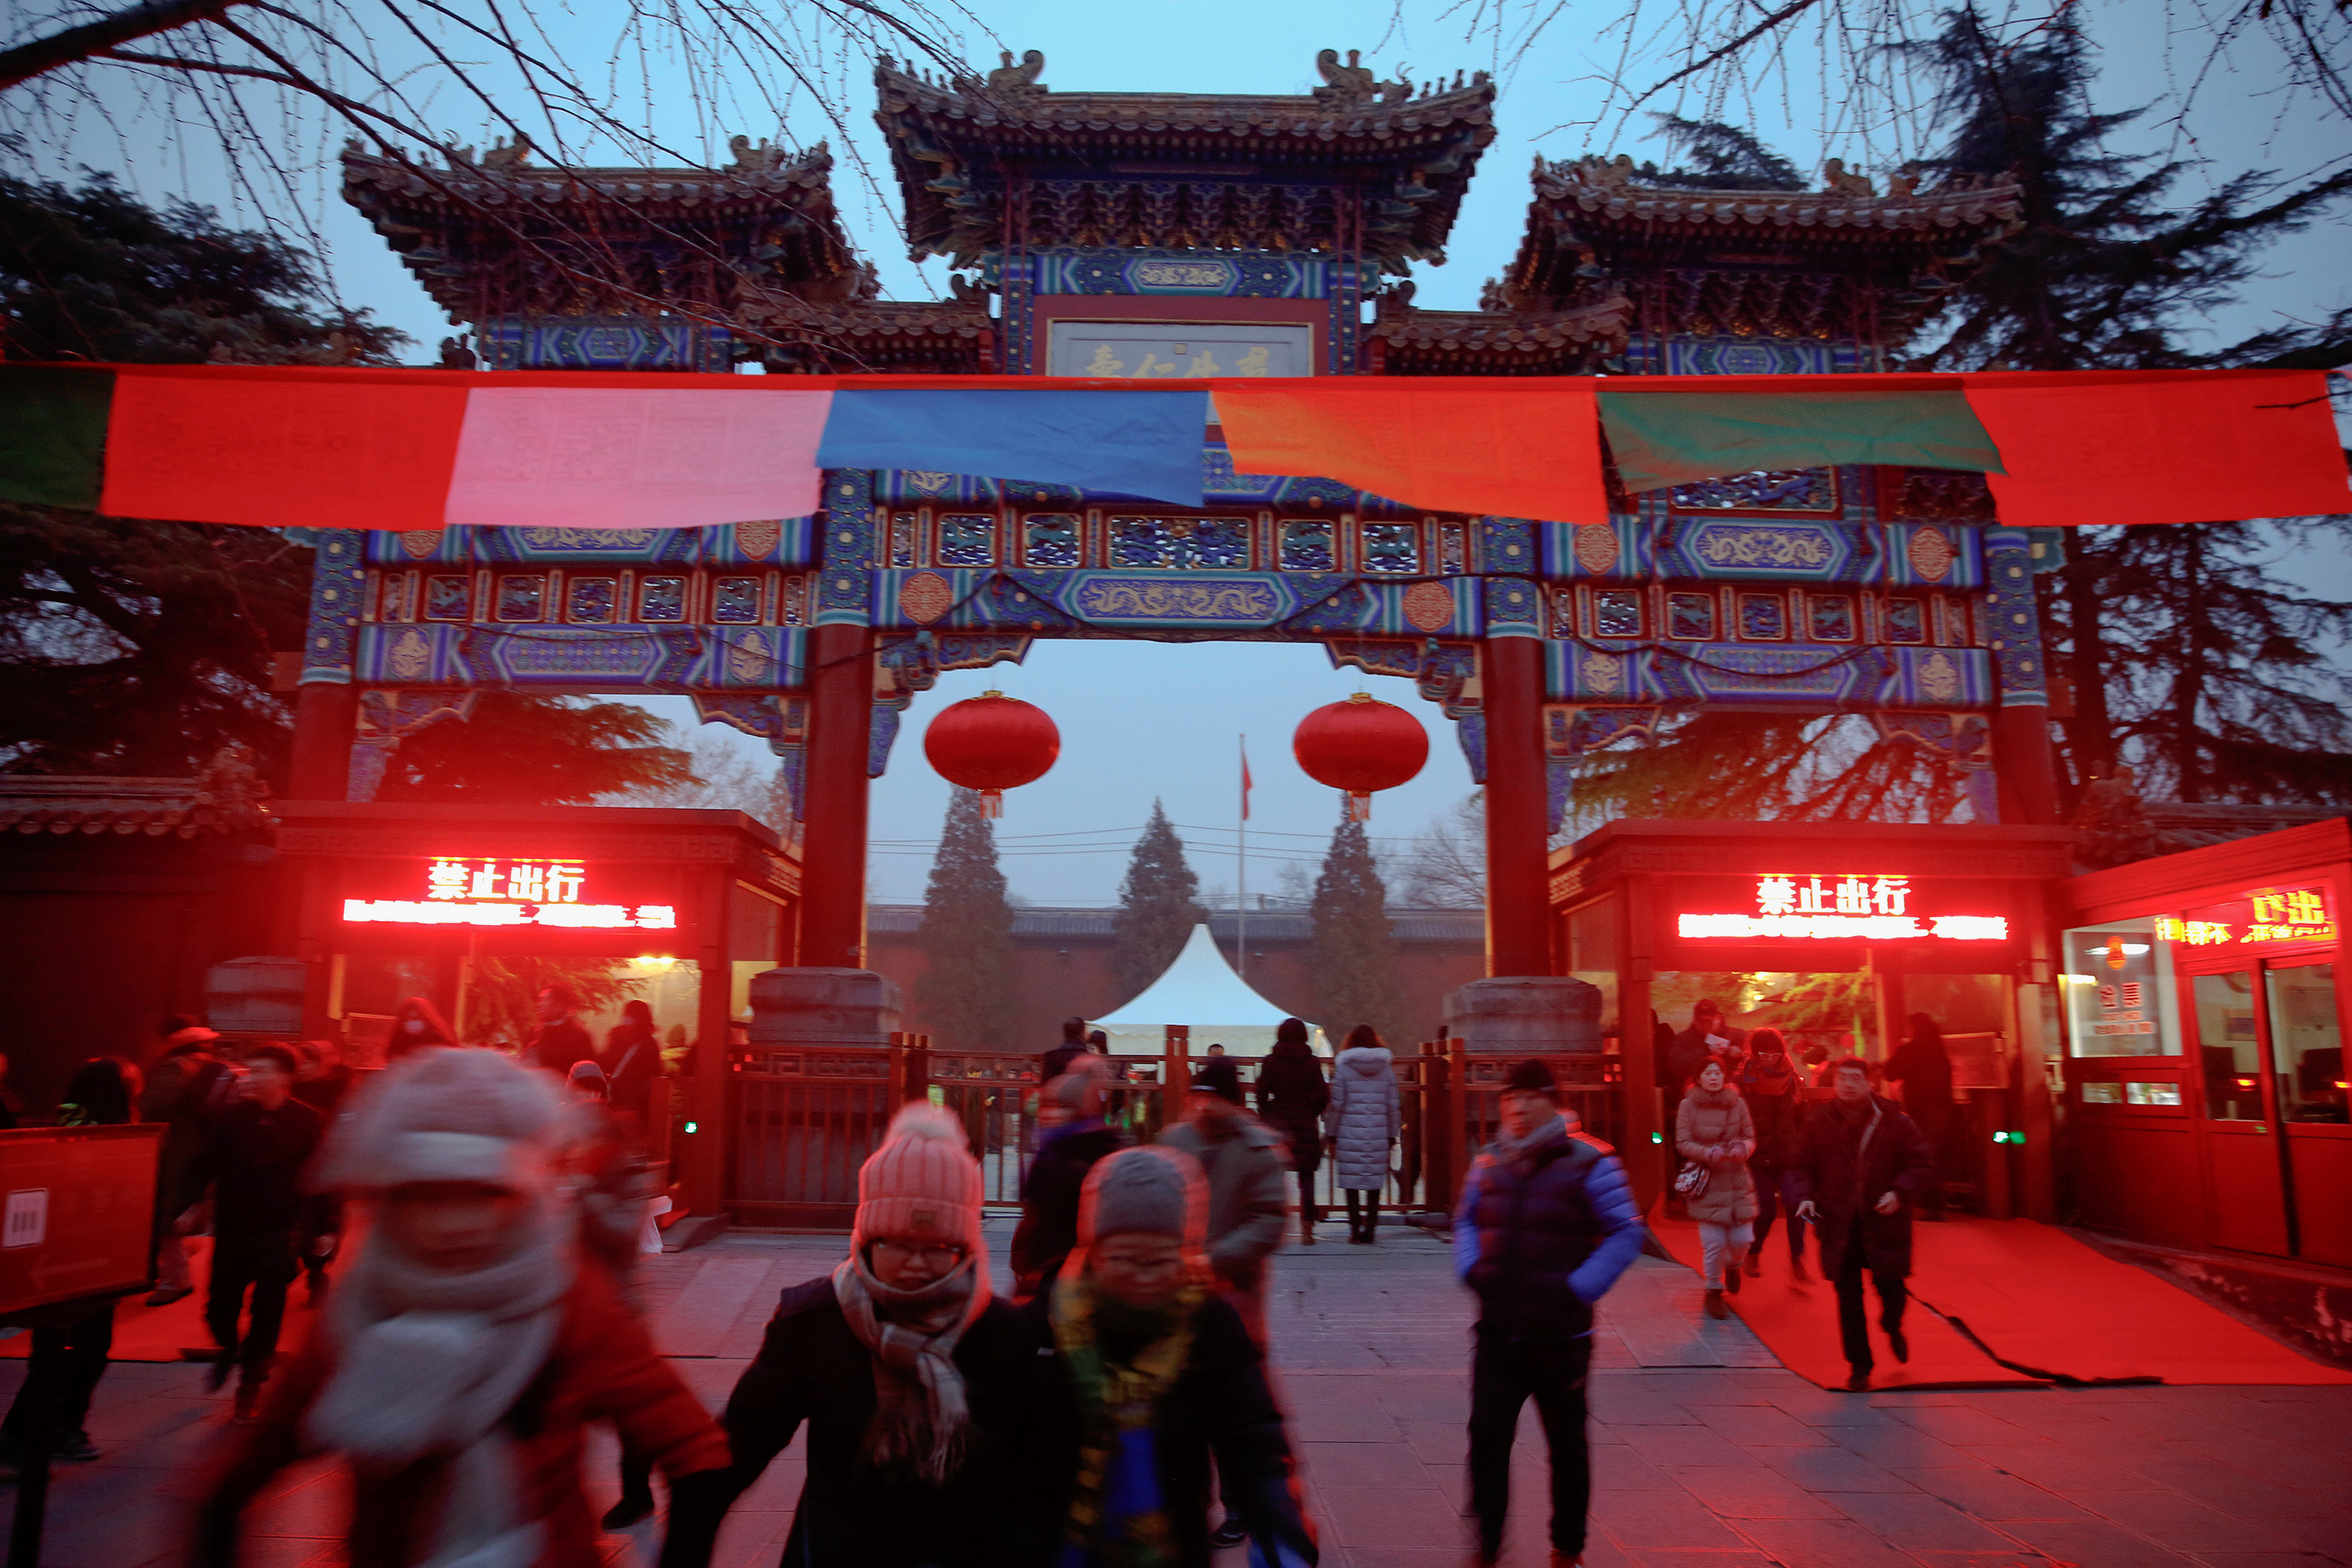 معبد لاما فى الصين يفتح أبوابه أمام المواطنين للاحتفال بالسنة القمرية الجديدة